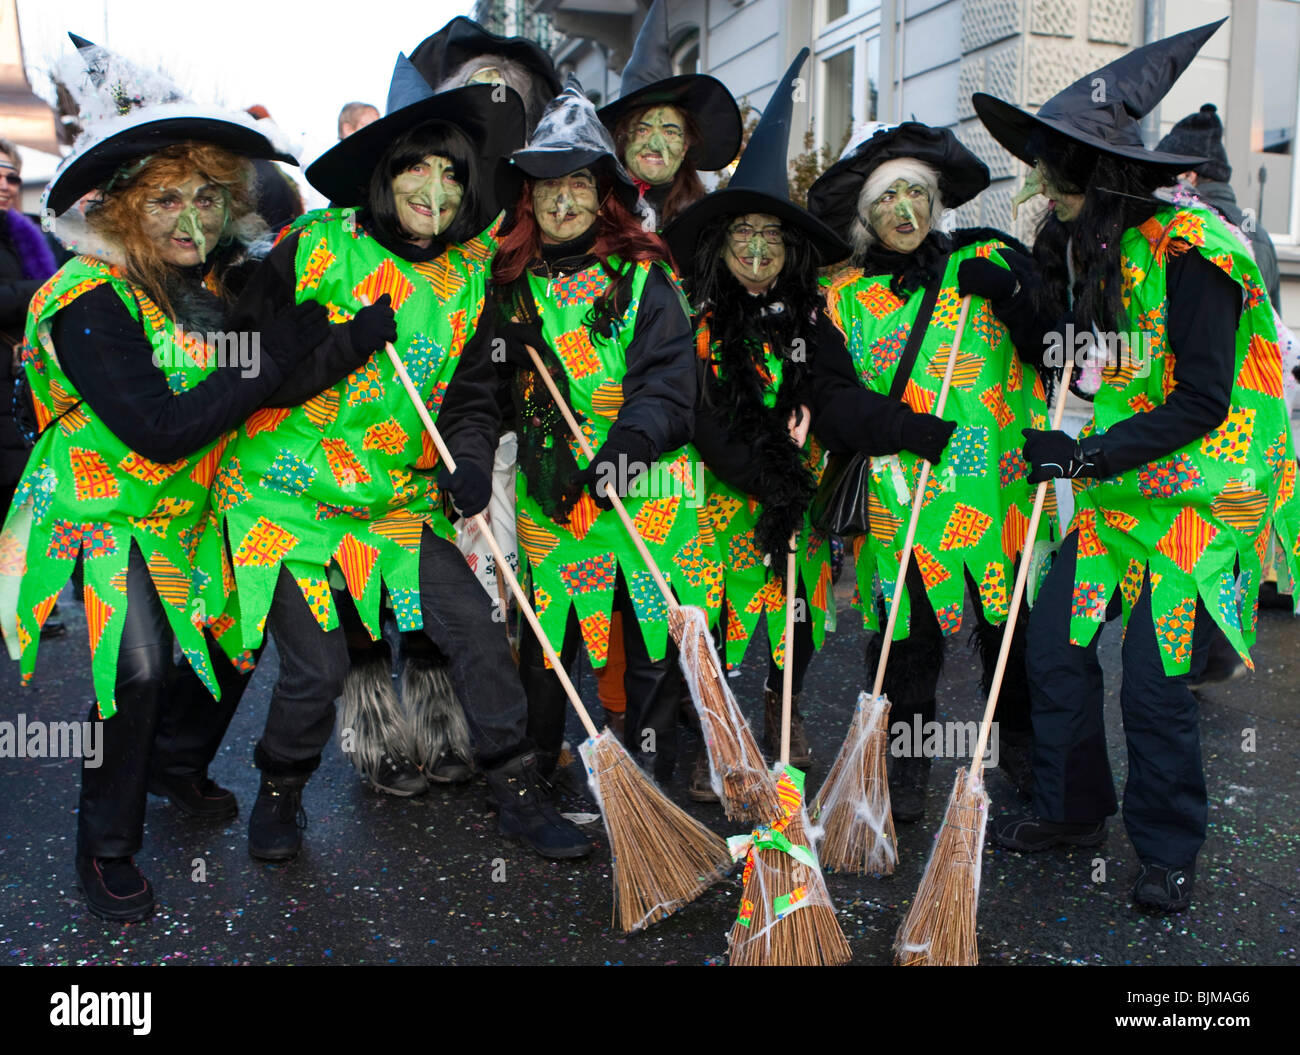 Carnaval de brujas fotografías e imágenes de alta resolución - Alamy